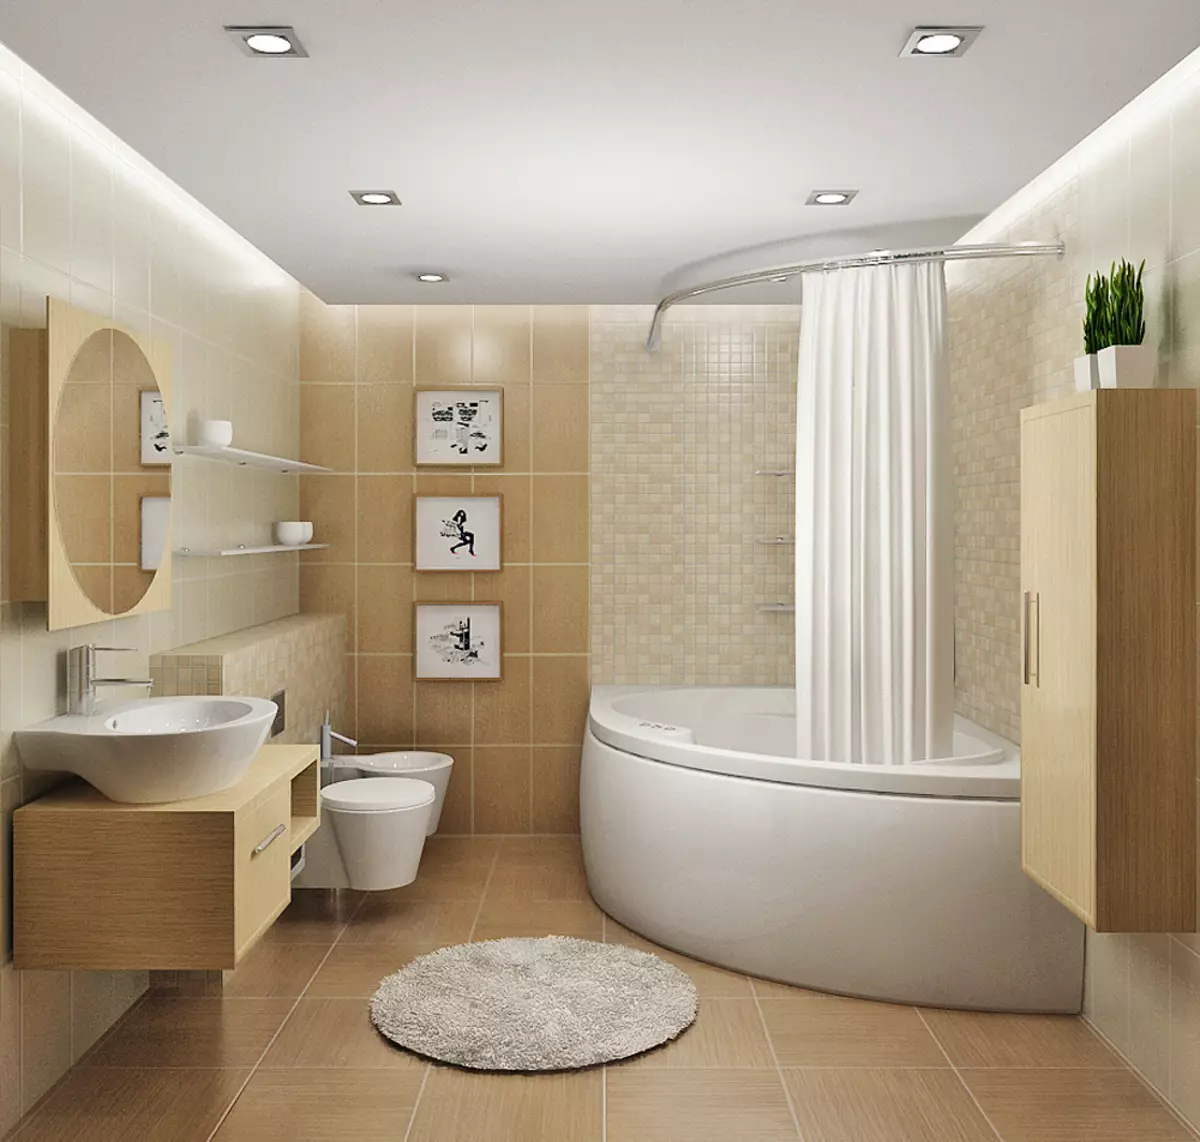 Design vu kombinéiert Buedzëmmer 6 Quadratmeter. M (77 Fotoen): Interieur Design mat Toilette, Bad Layout 2 bis 3 Meter 10454_64